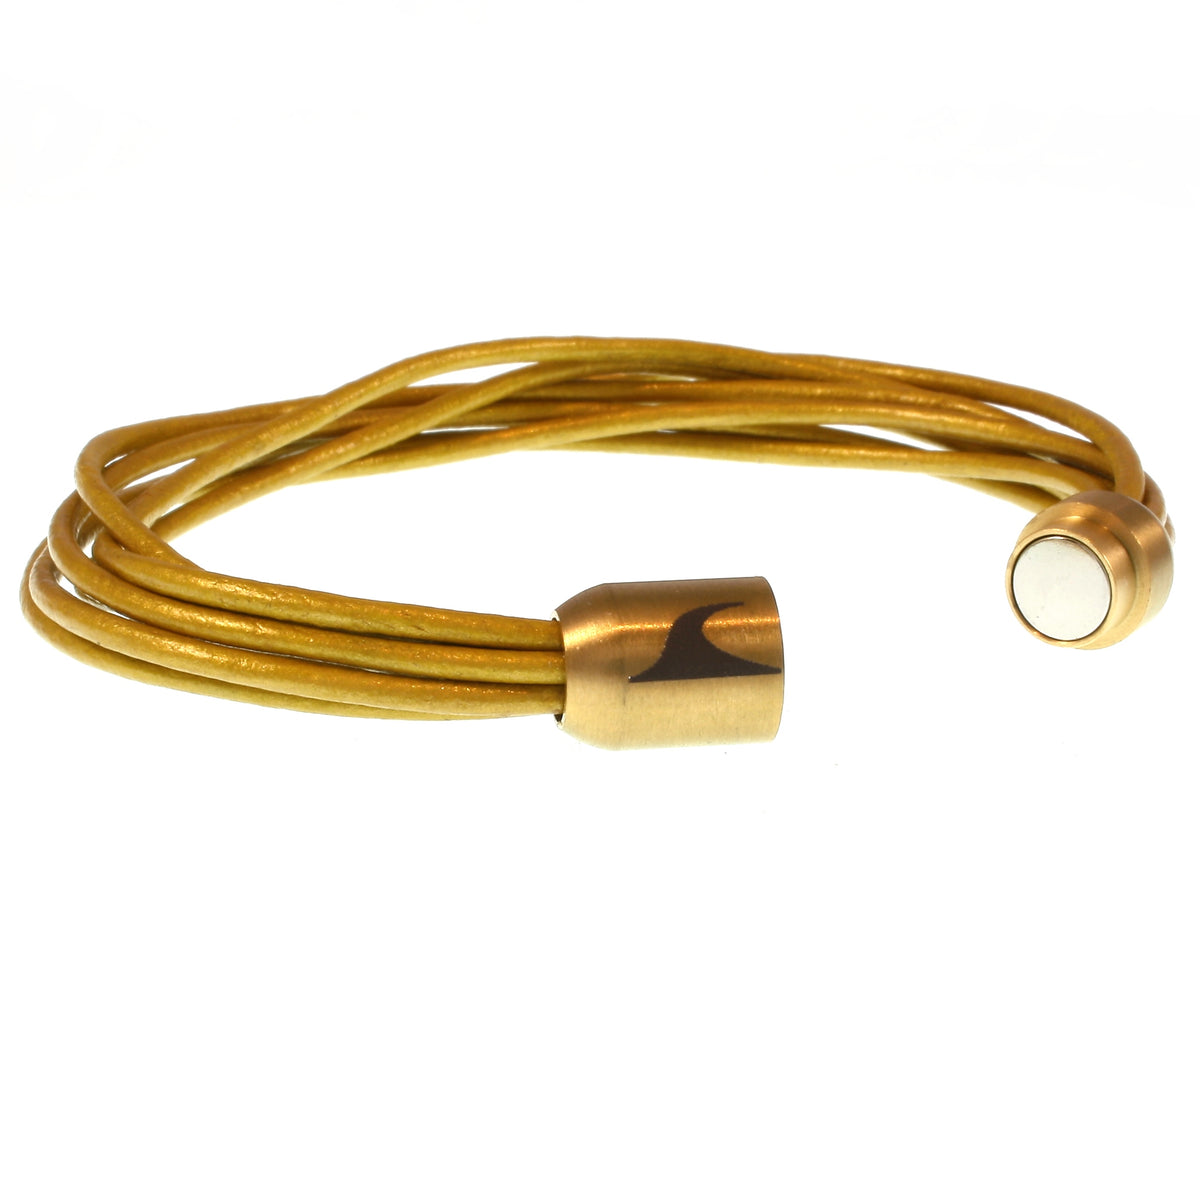 Damen-Leder-armband-fem-gold-Edelstahlverschluss-offen-wavepirate-shop-r